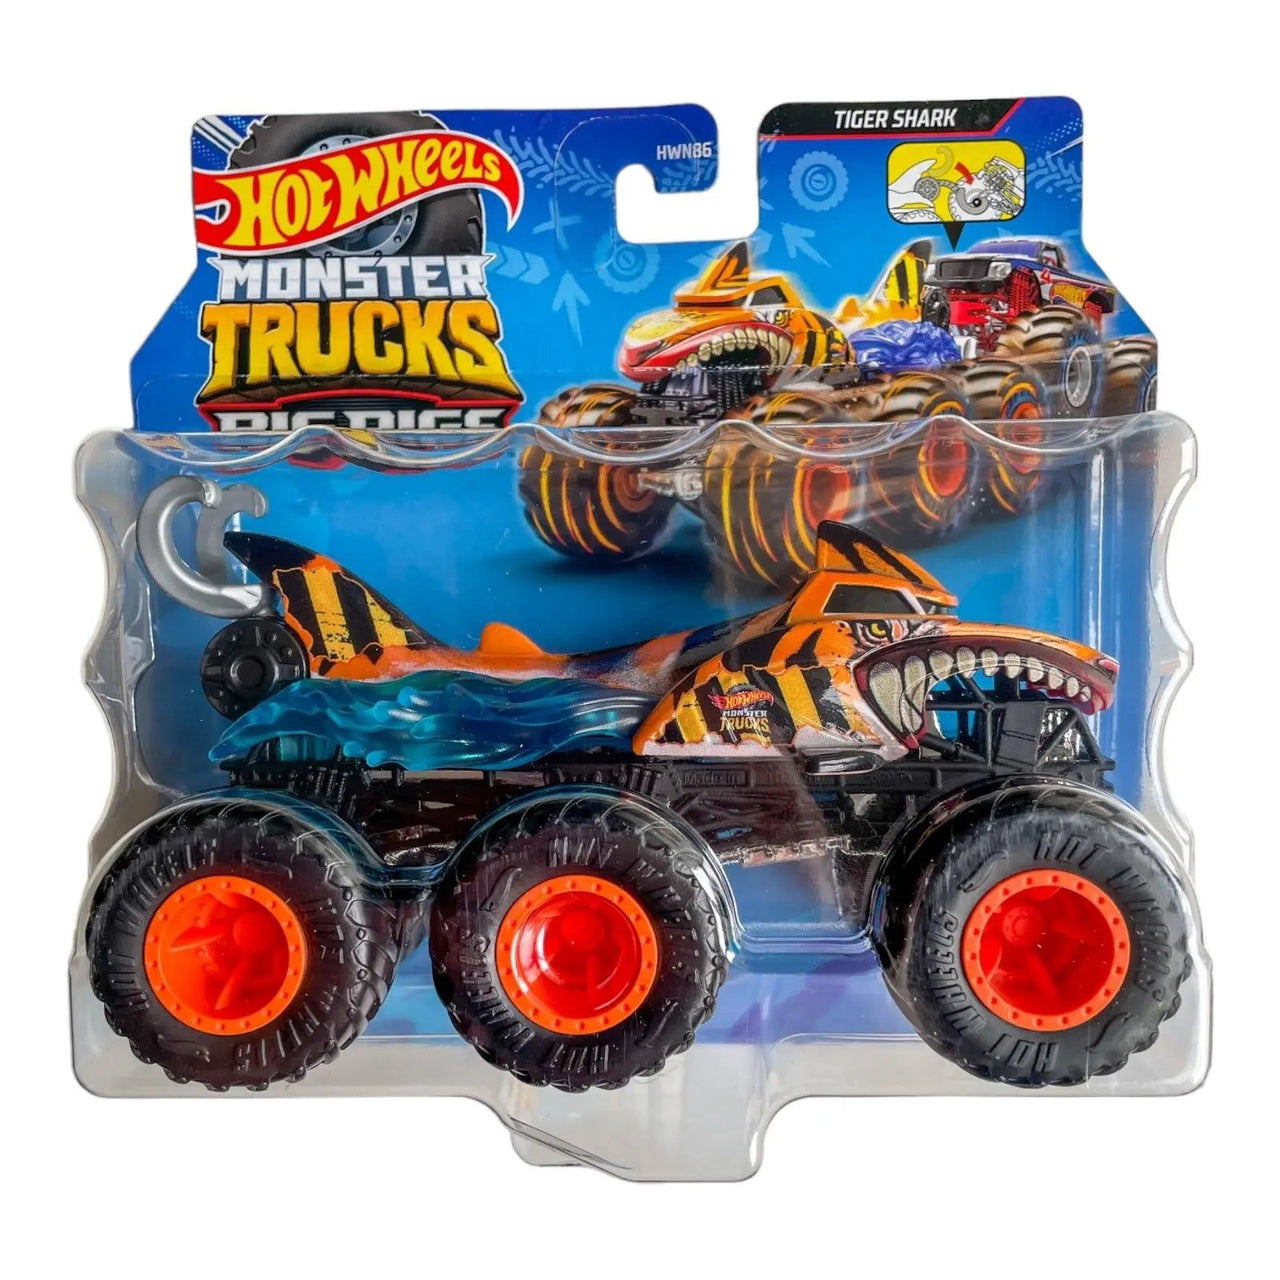 Hot Wheels Monster Truck Big Rigs Tiger Shark Hot Wheels